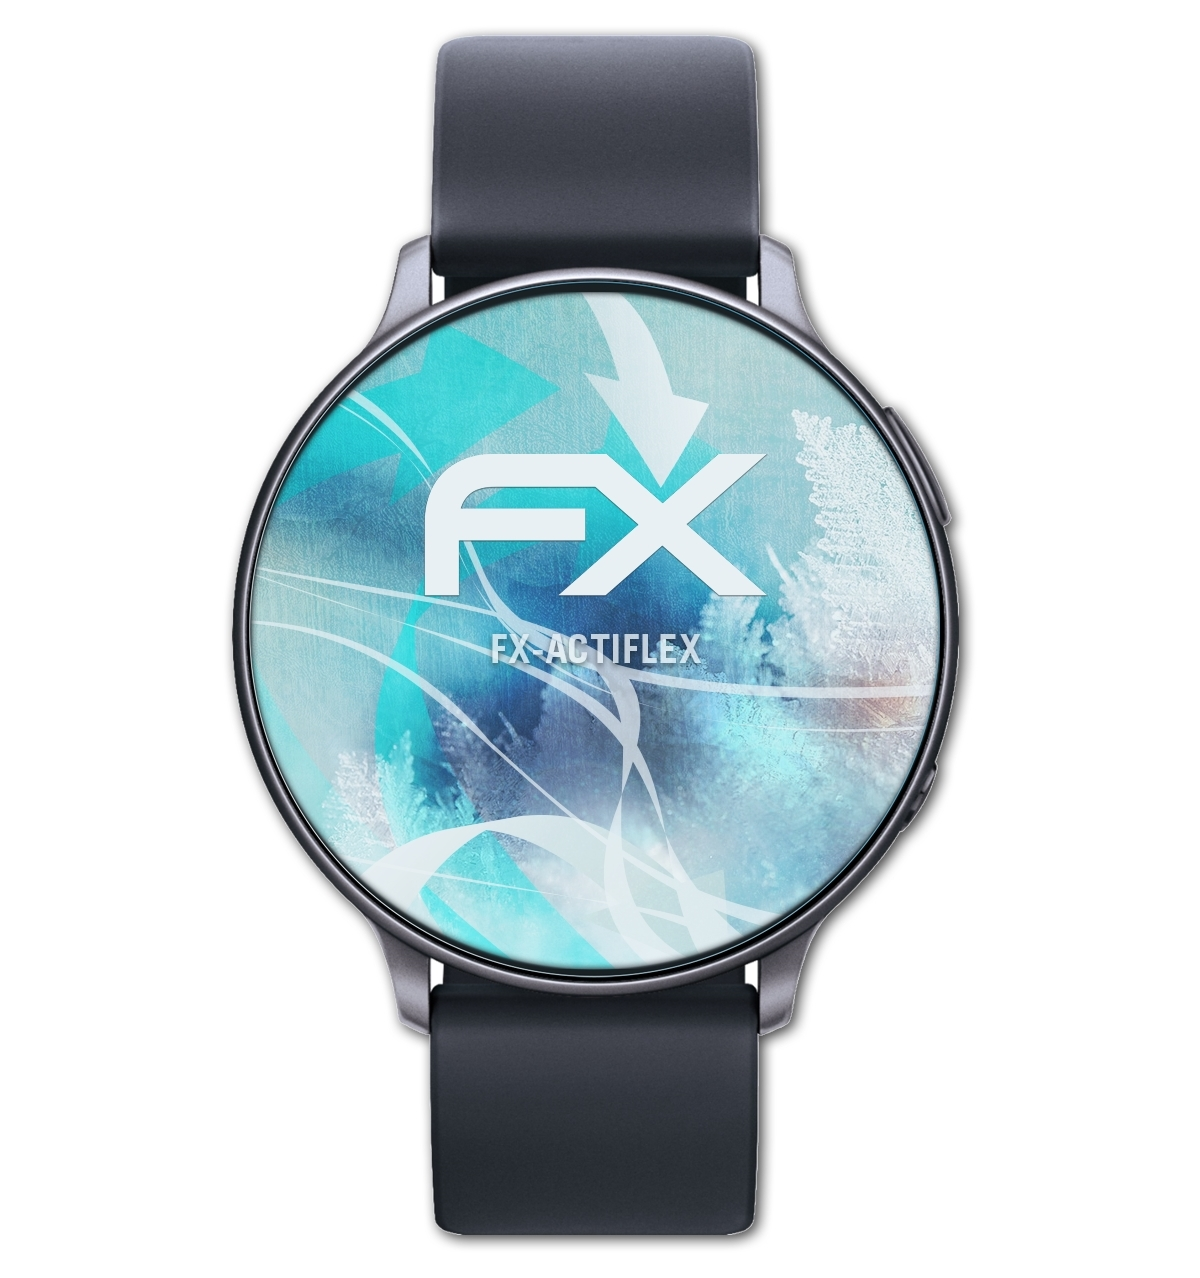 ATFOLIX 3x FX-ActiFleX Displayschutz(für Smartwatch Display (38mm))